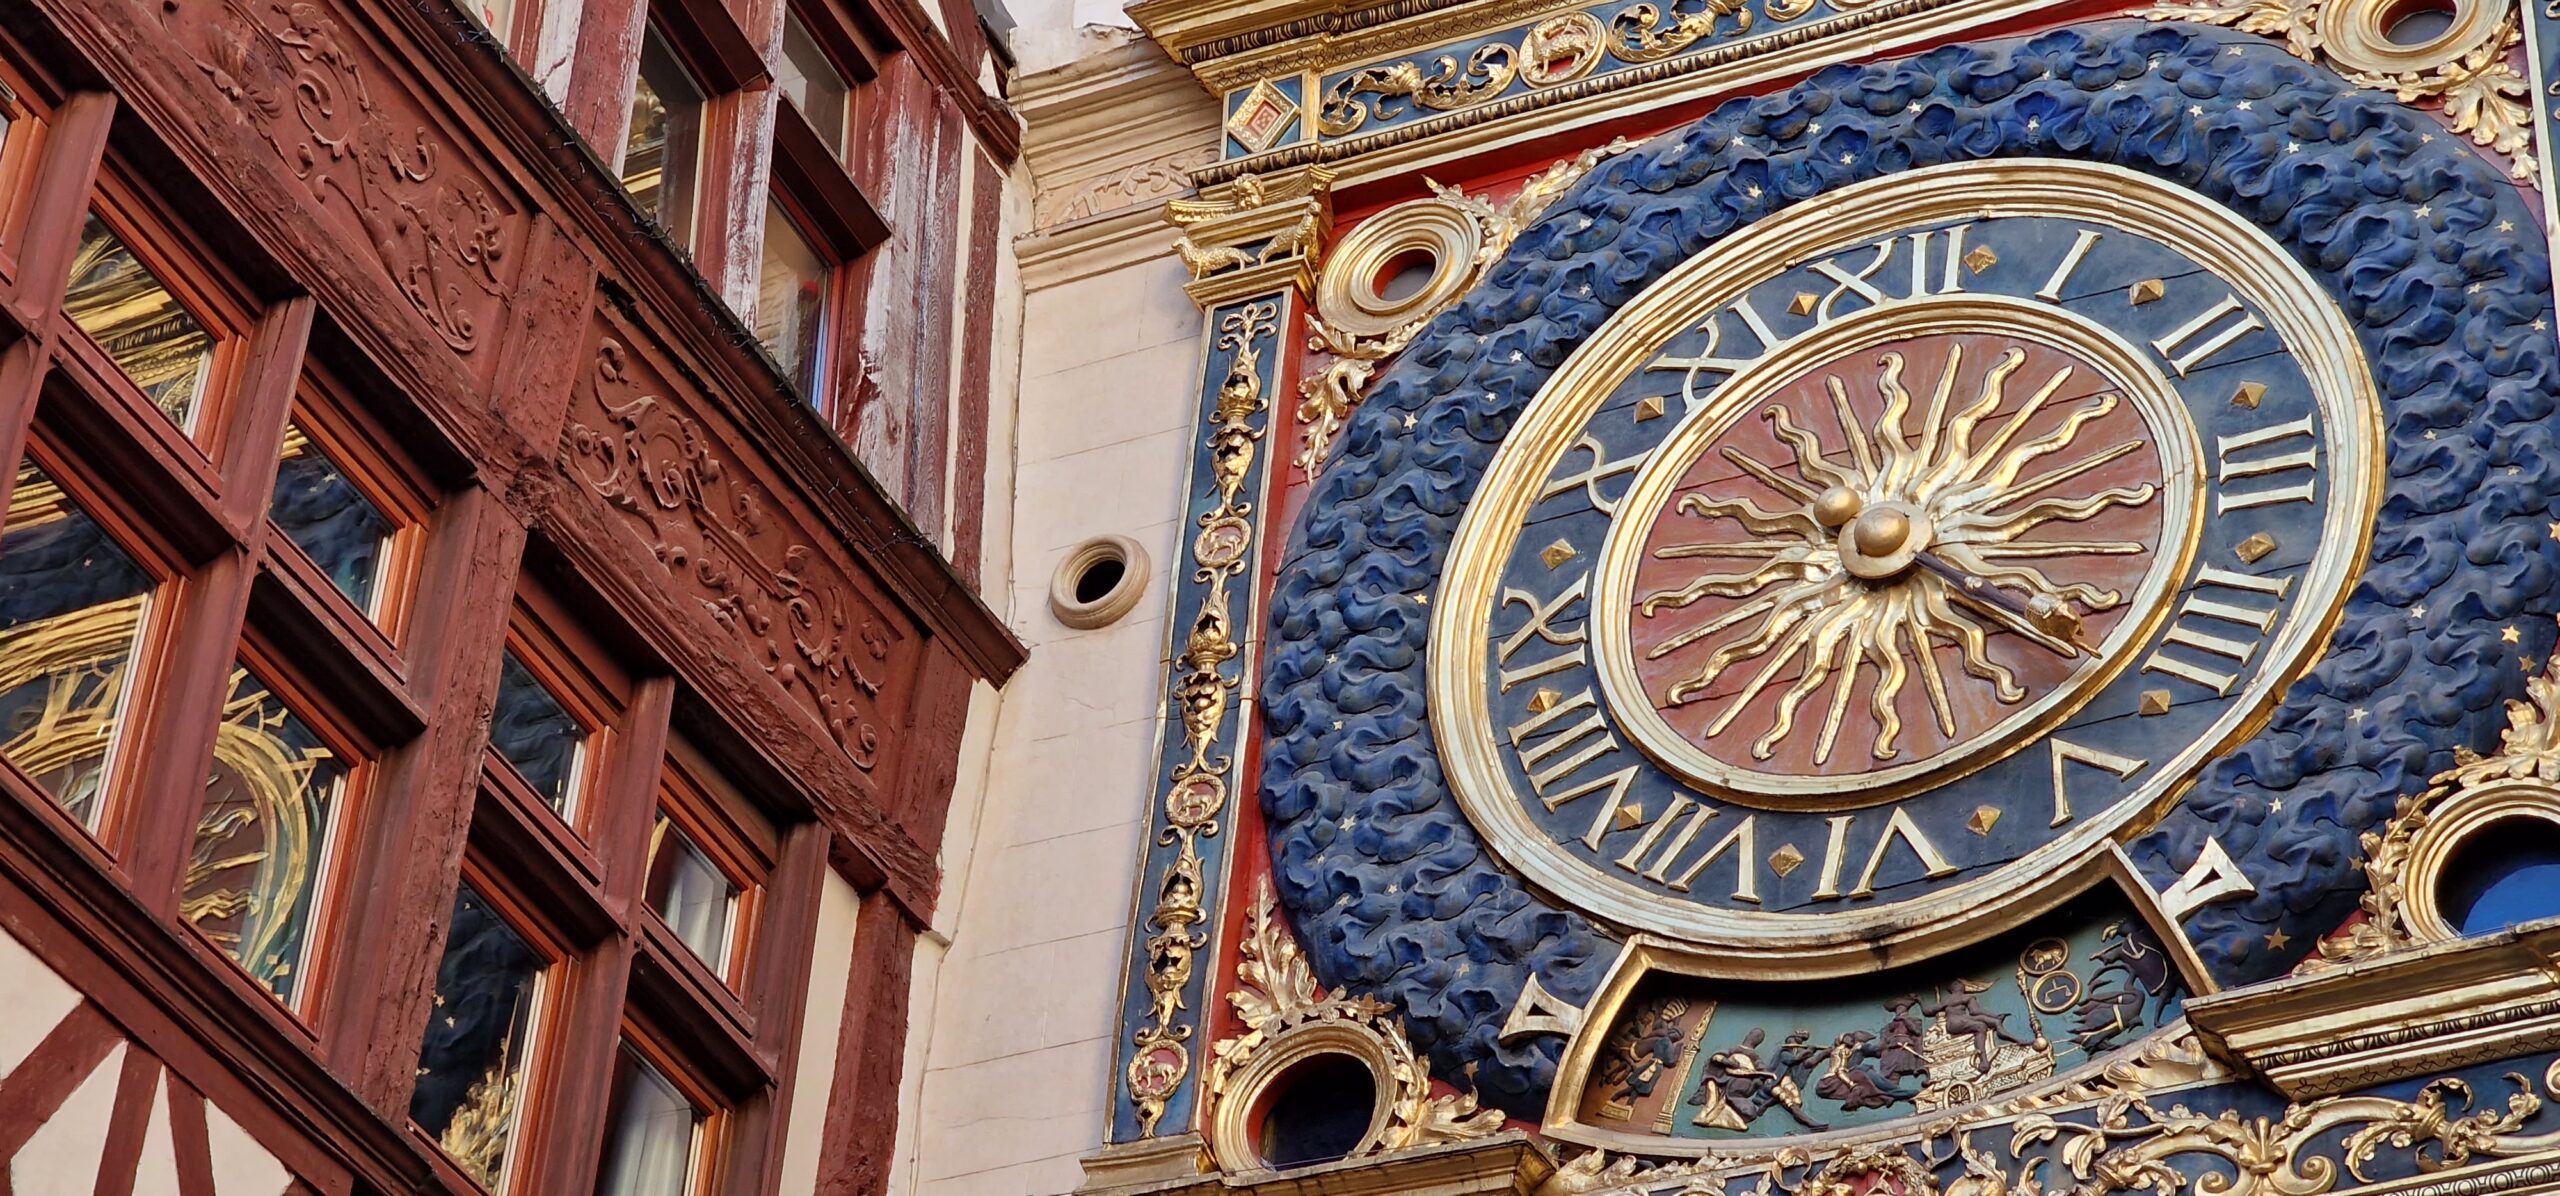 Le gros horloge de Rouen : l’horloge historique qui a inspiré Big Ben